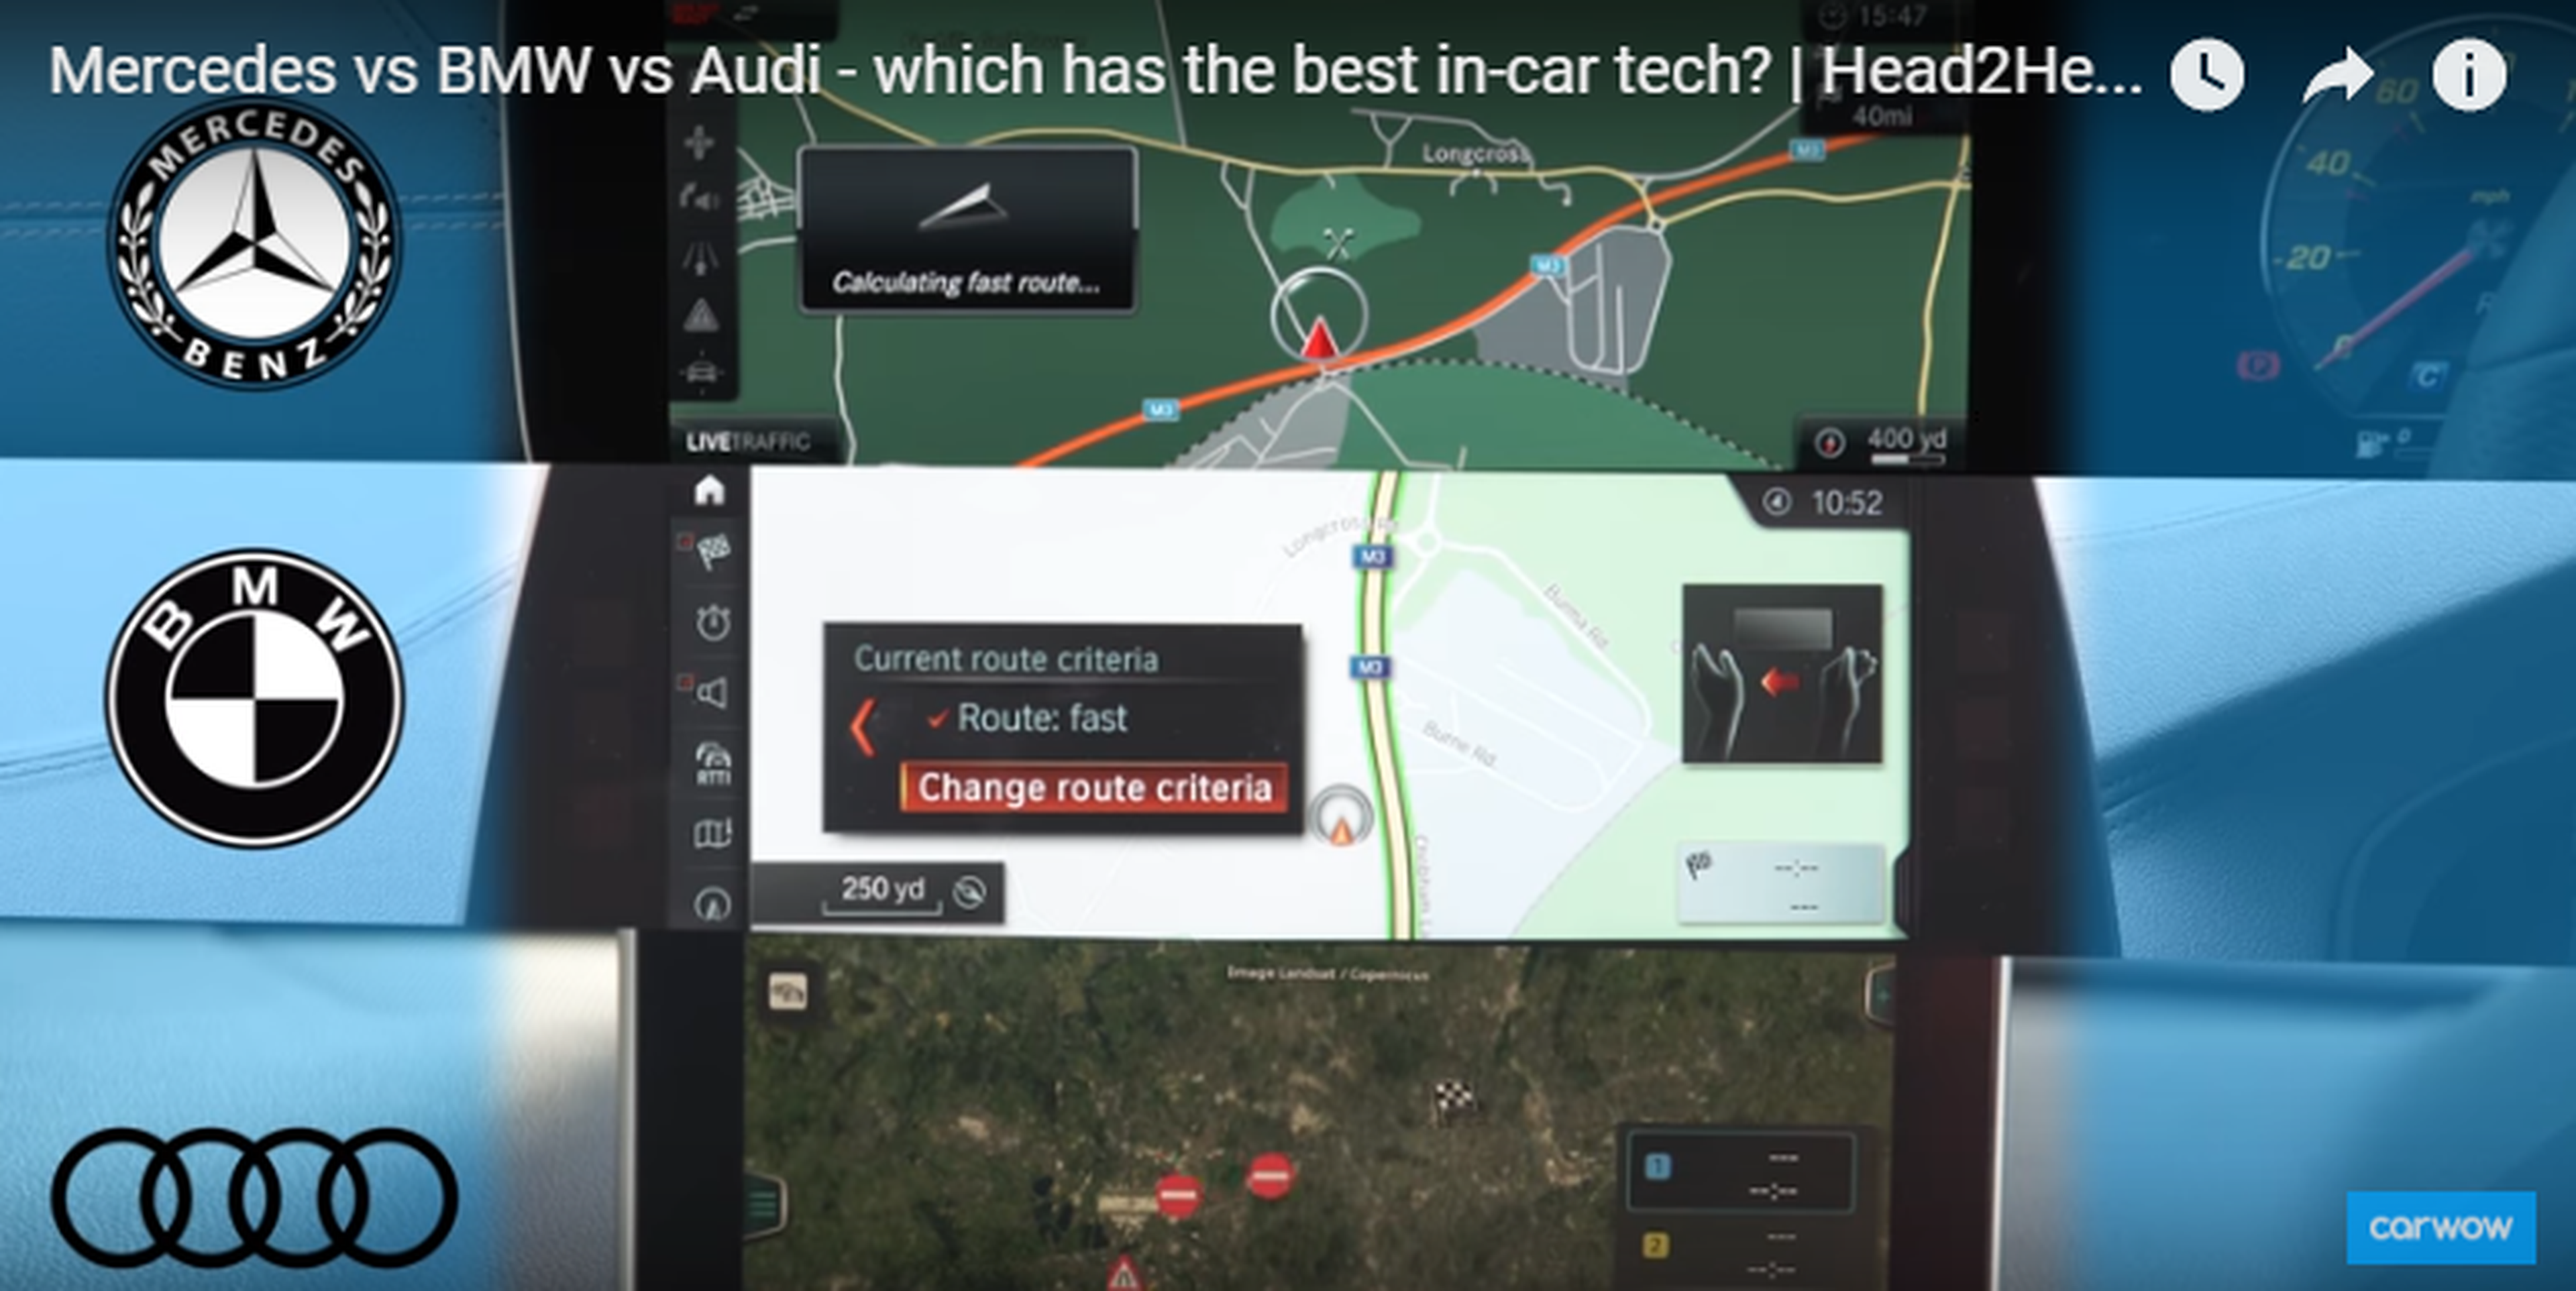 Mercedes Vs BMW Vs Audi: quién gana la batalla tecnológica